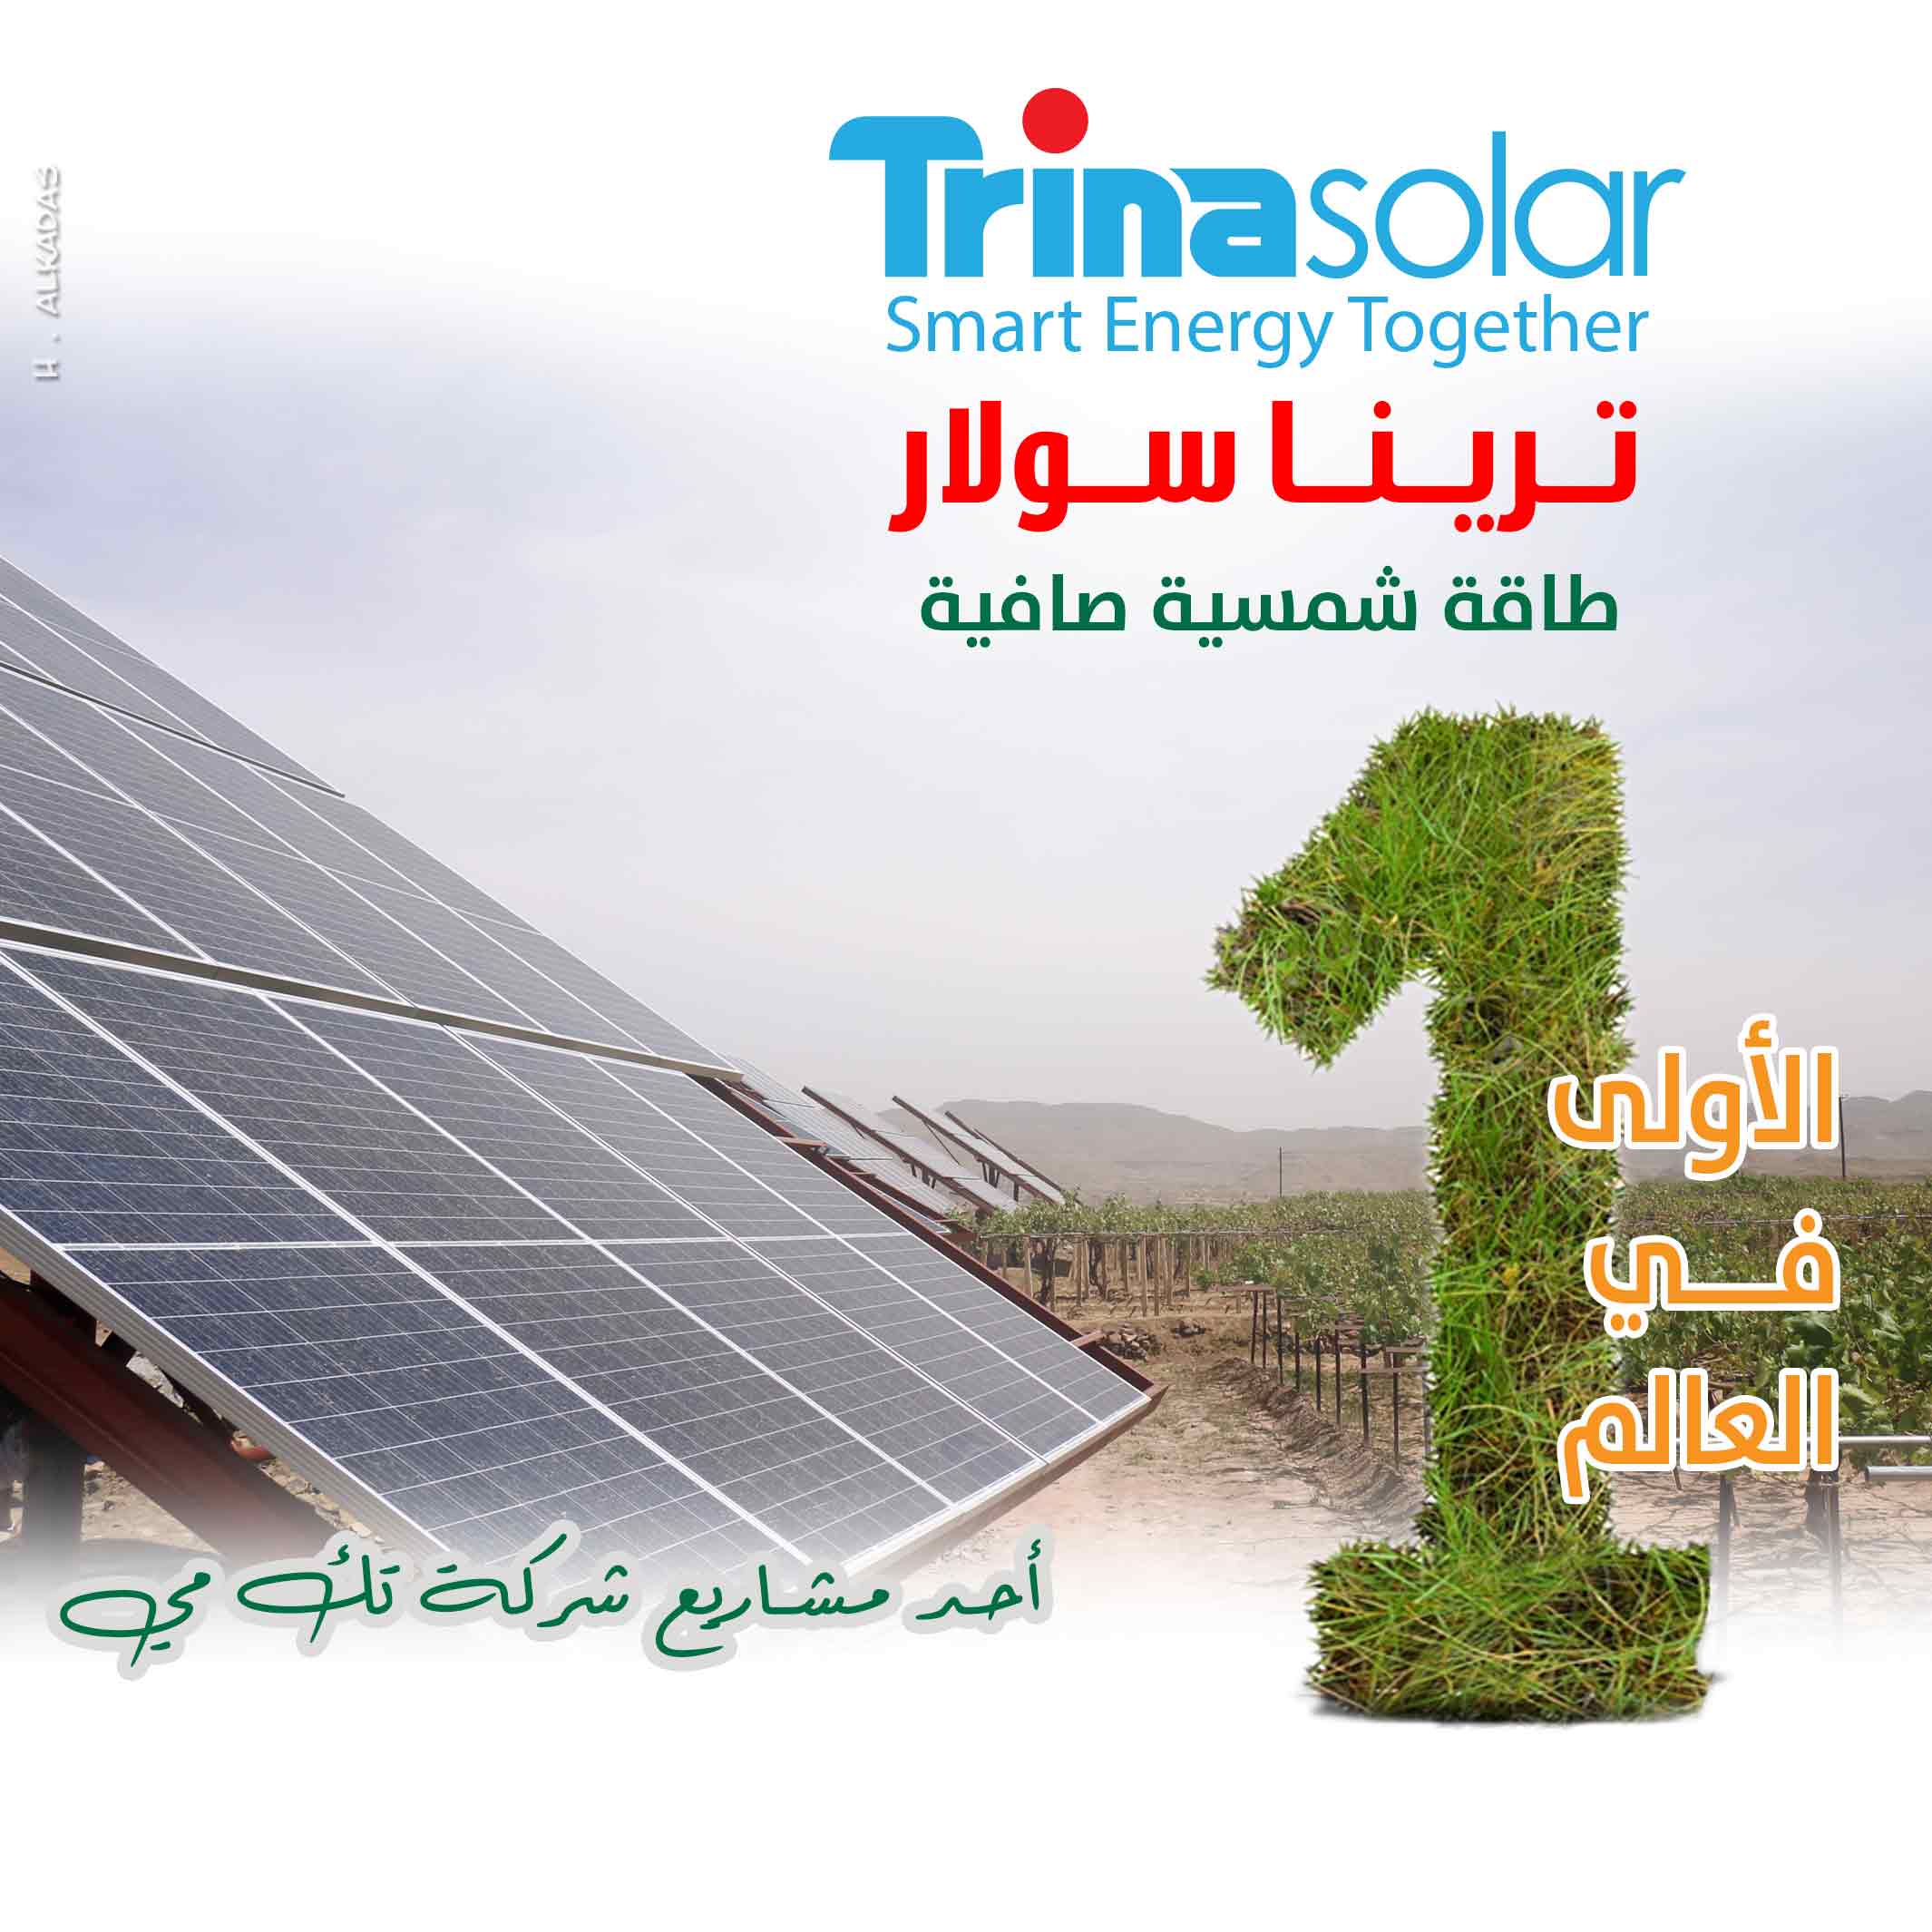 مركب عريضة وصفة  ترينا سولار ألواح شمسية الأولى في أغلب دول العالم - شركة تك مي لحلول الطاقة  الشمسية والمضخات الزراعية